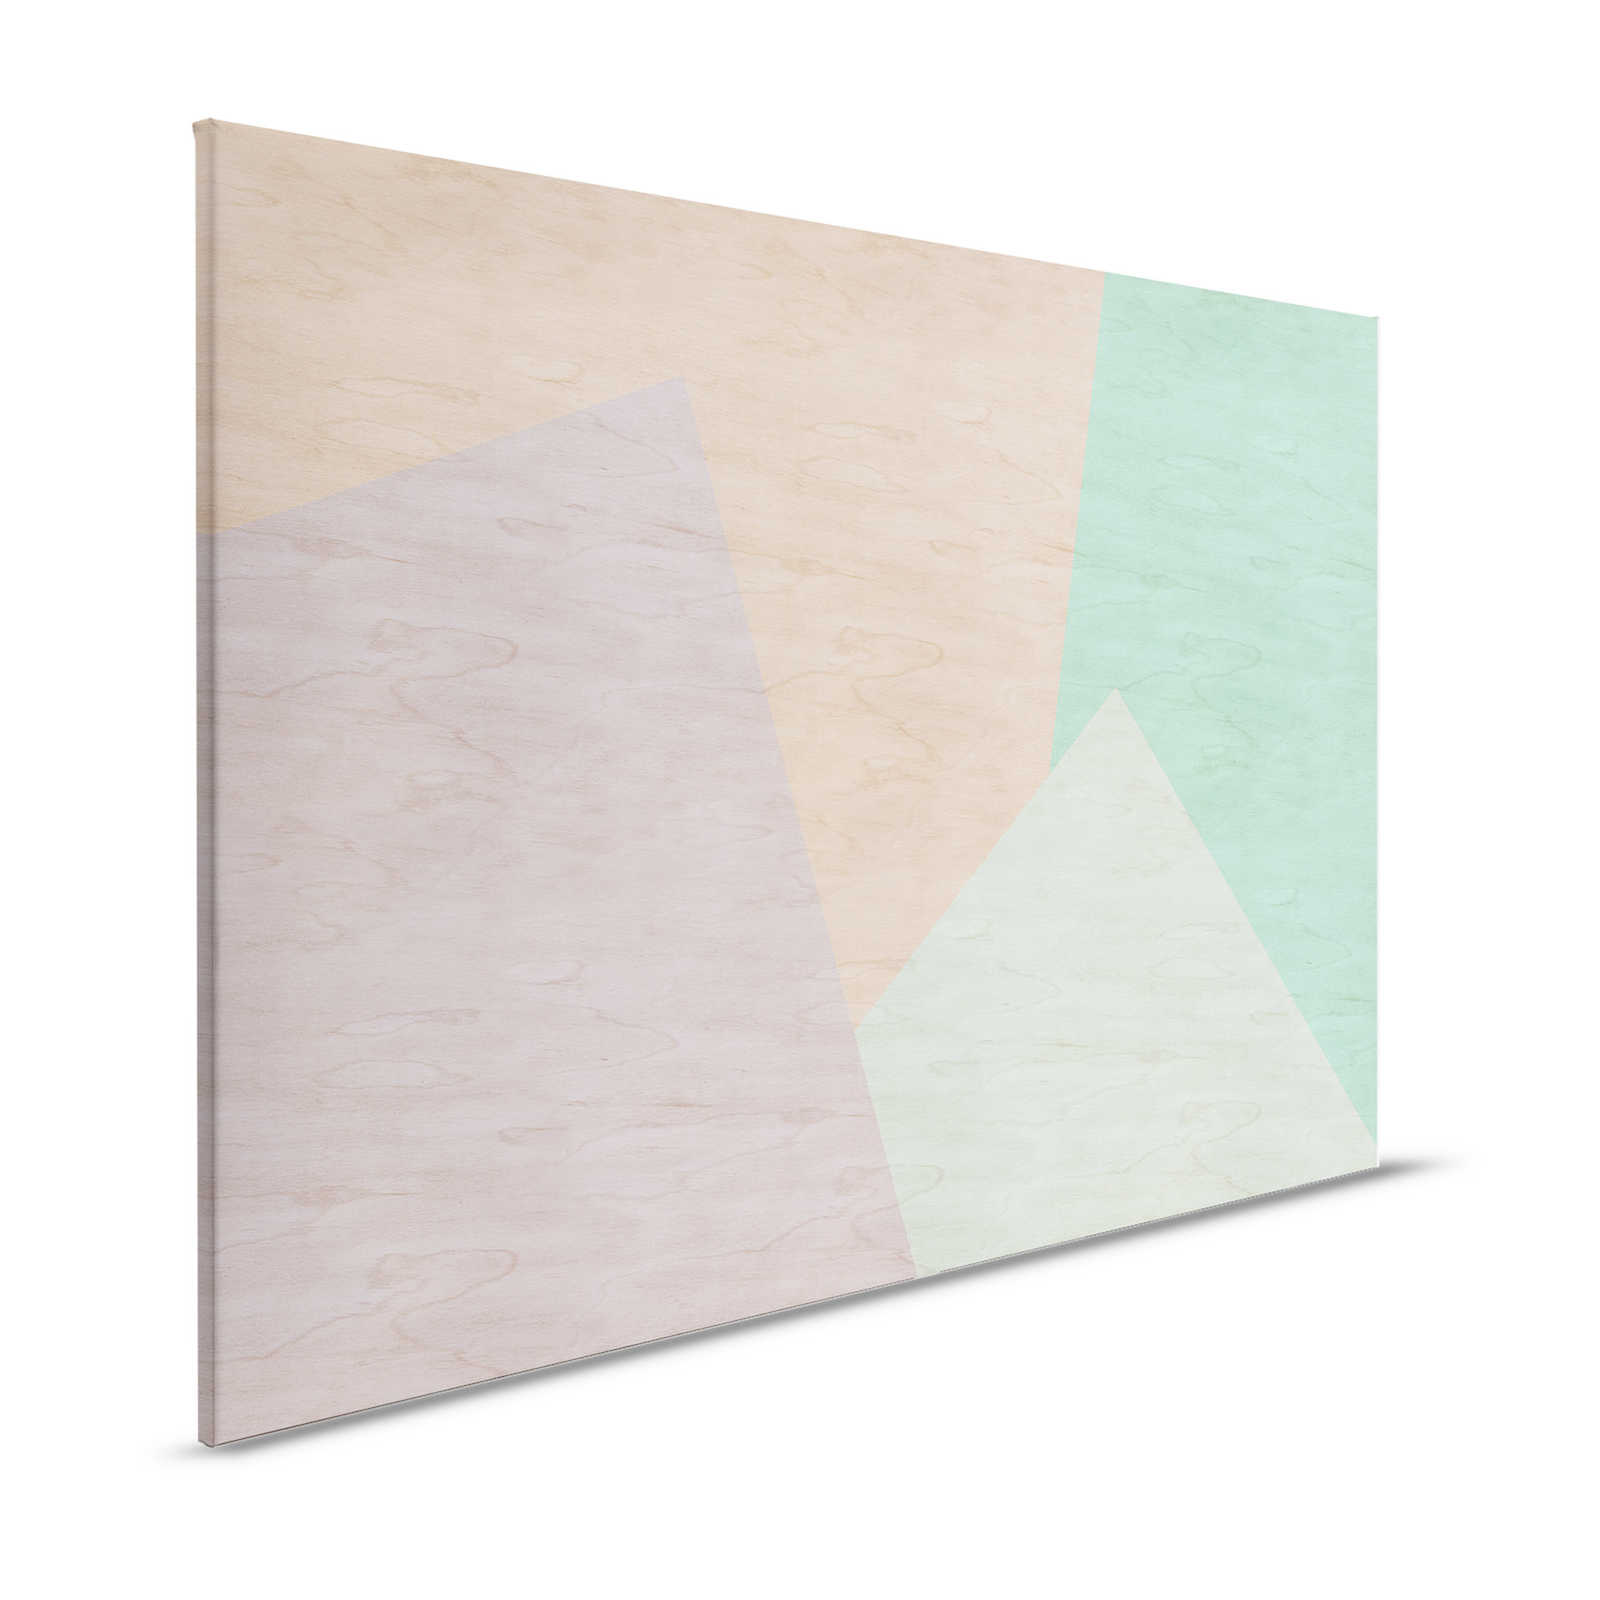 Inaly 1 - Tableau abstrait multicolore sur toile, aspect contreplaqué - 1,20 m x 0,80 m
